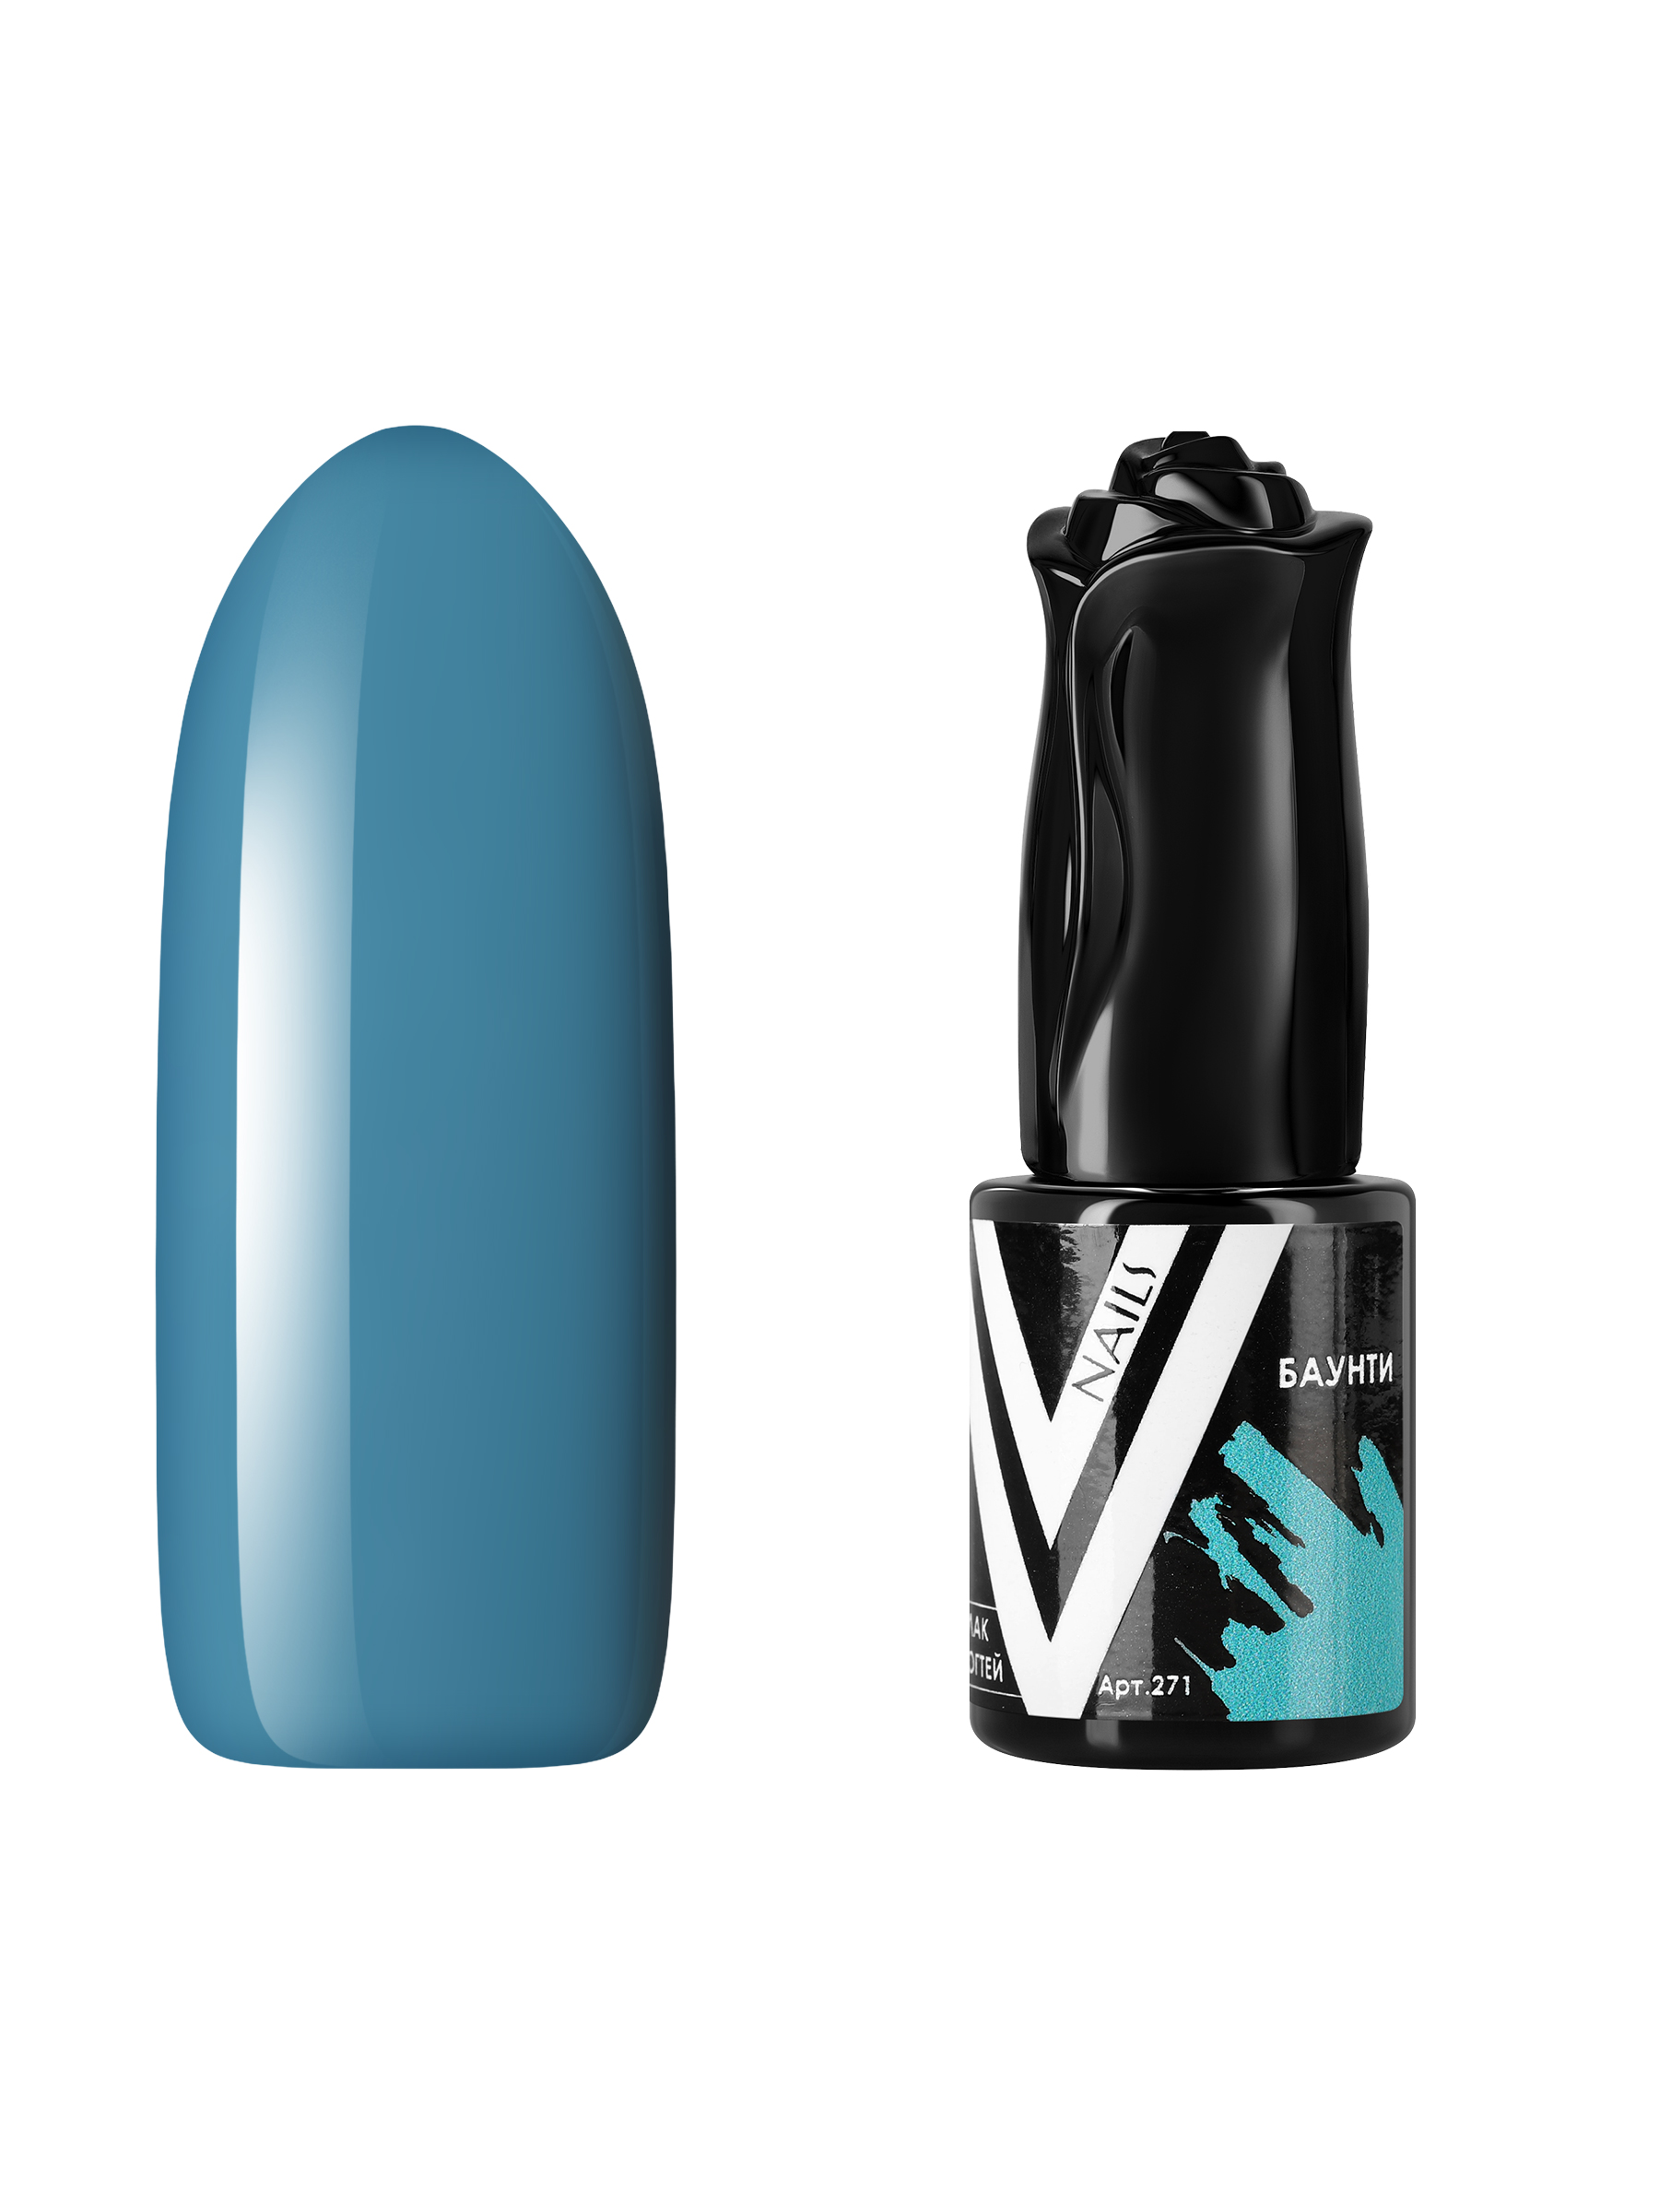 Гель-лак для ногтей Vogue Nails плотный самовыравнивающийся, темный, голубой, 10 мл гель лак с перламутром vogue nails кошачий глаз магнитный плотный темный фиолетовый 10 мл